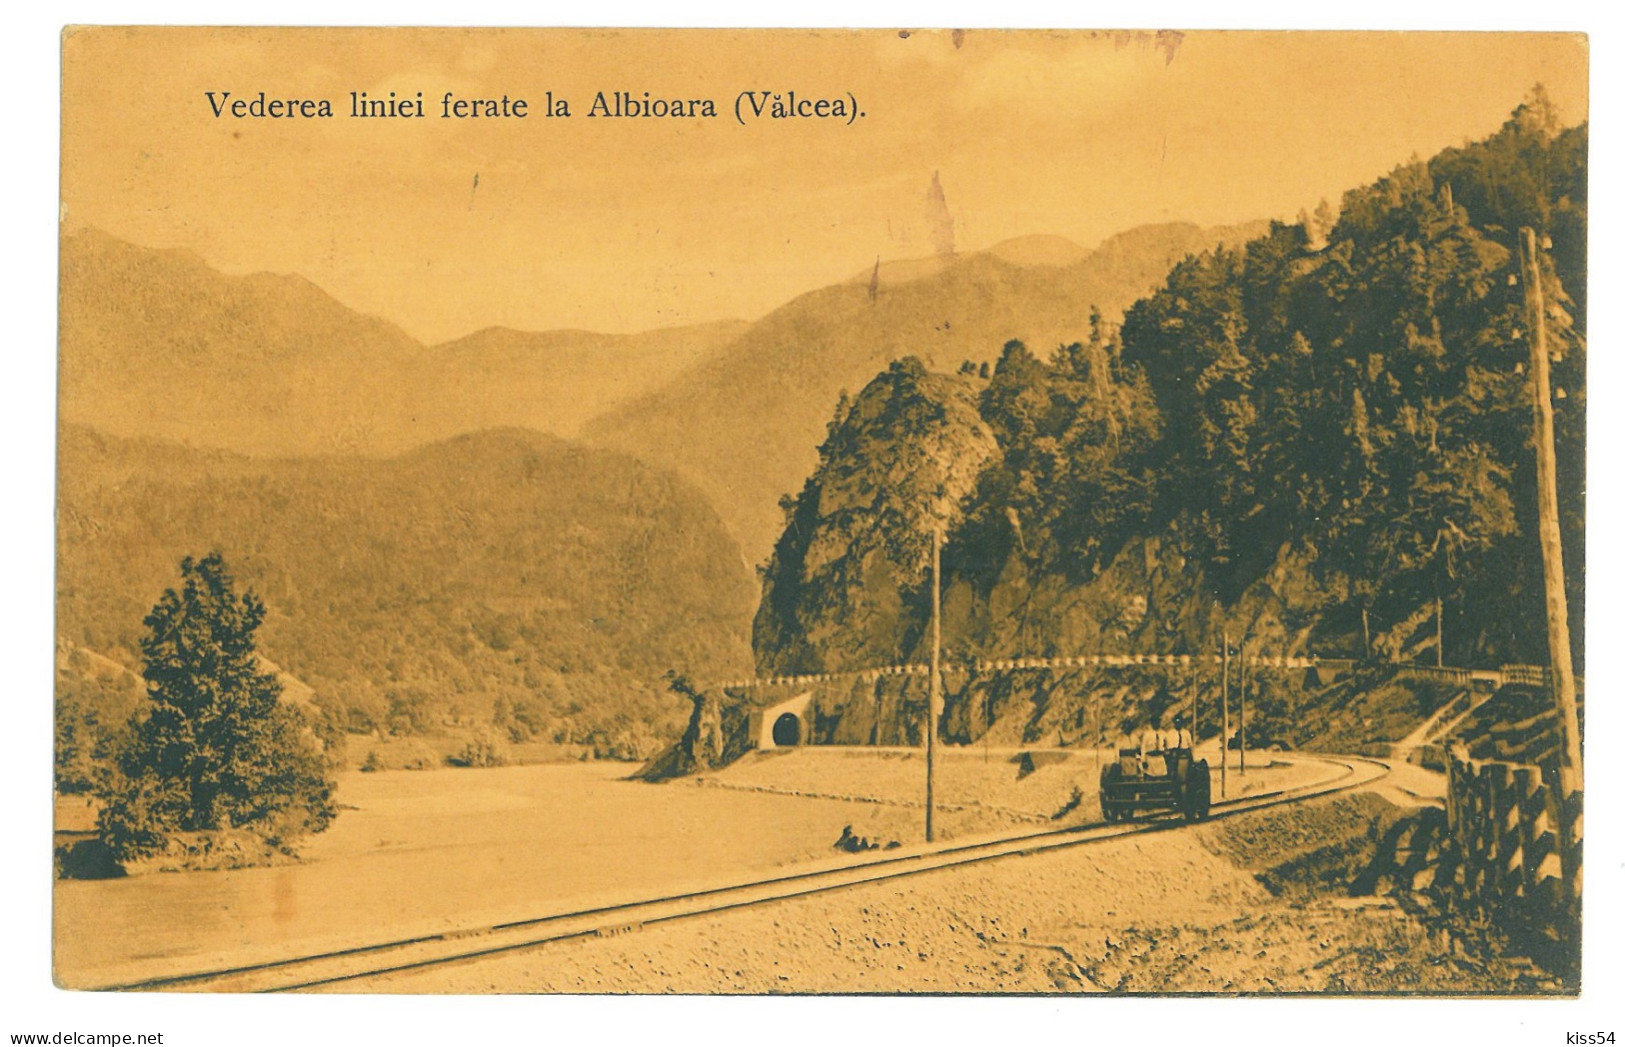 RO 40 - 22676 VALCEA, Valea Oltului, Drezina, Railway Tunnel, Romania - Old Postcard - Used - 1912 - Rumänien